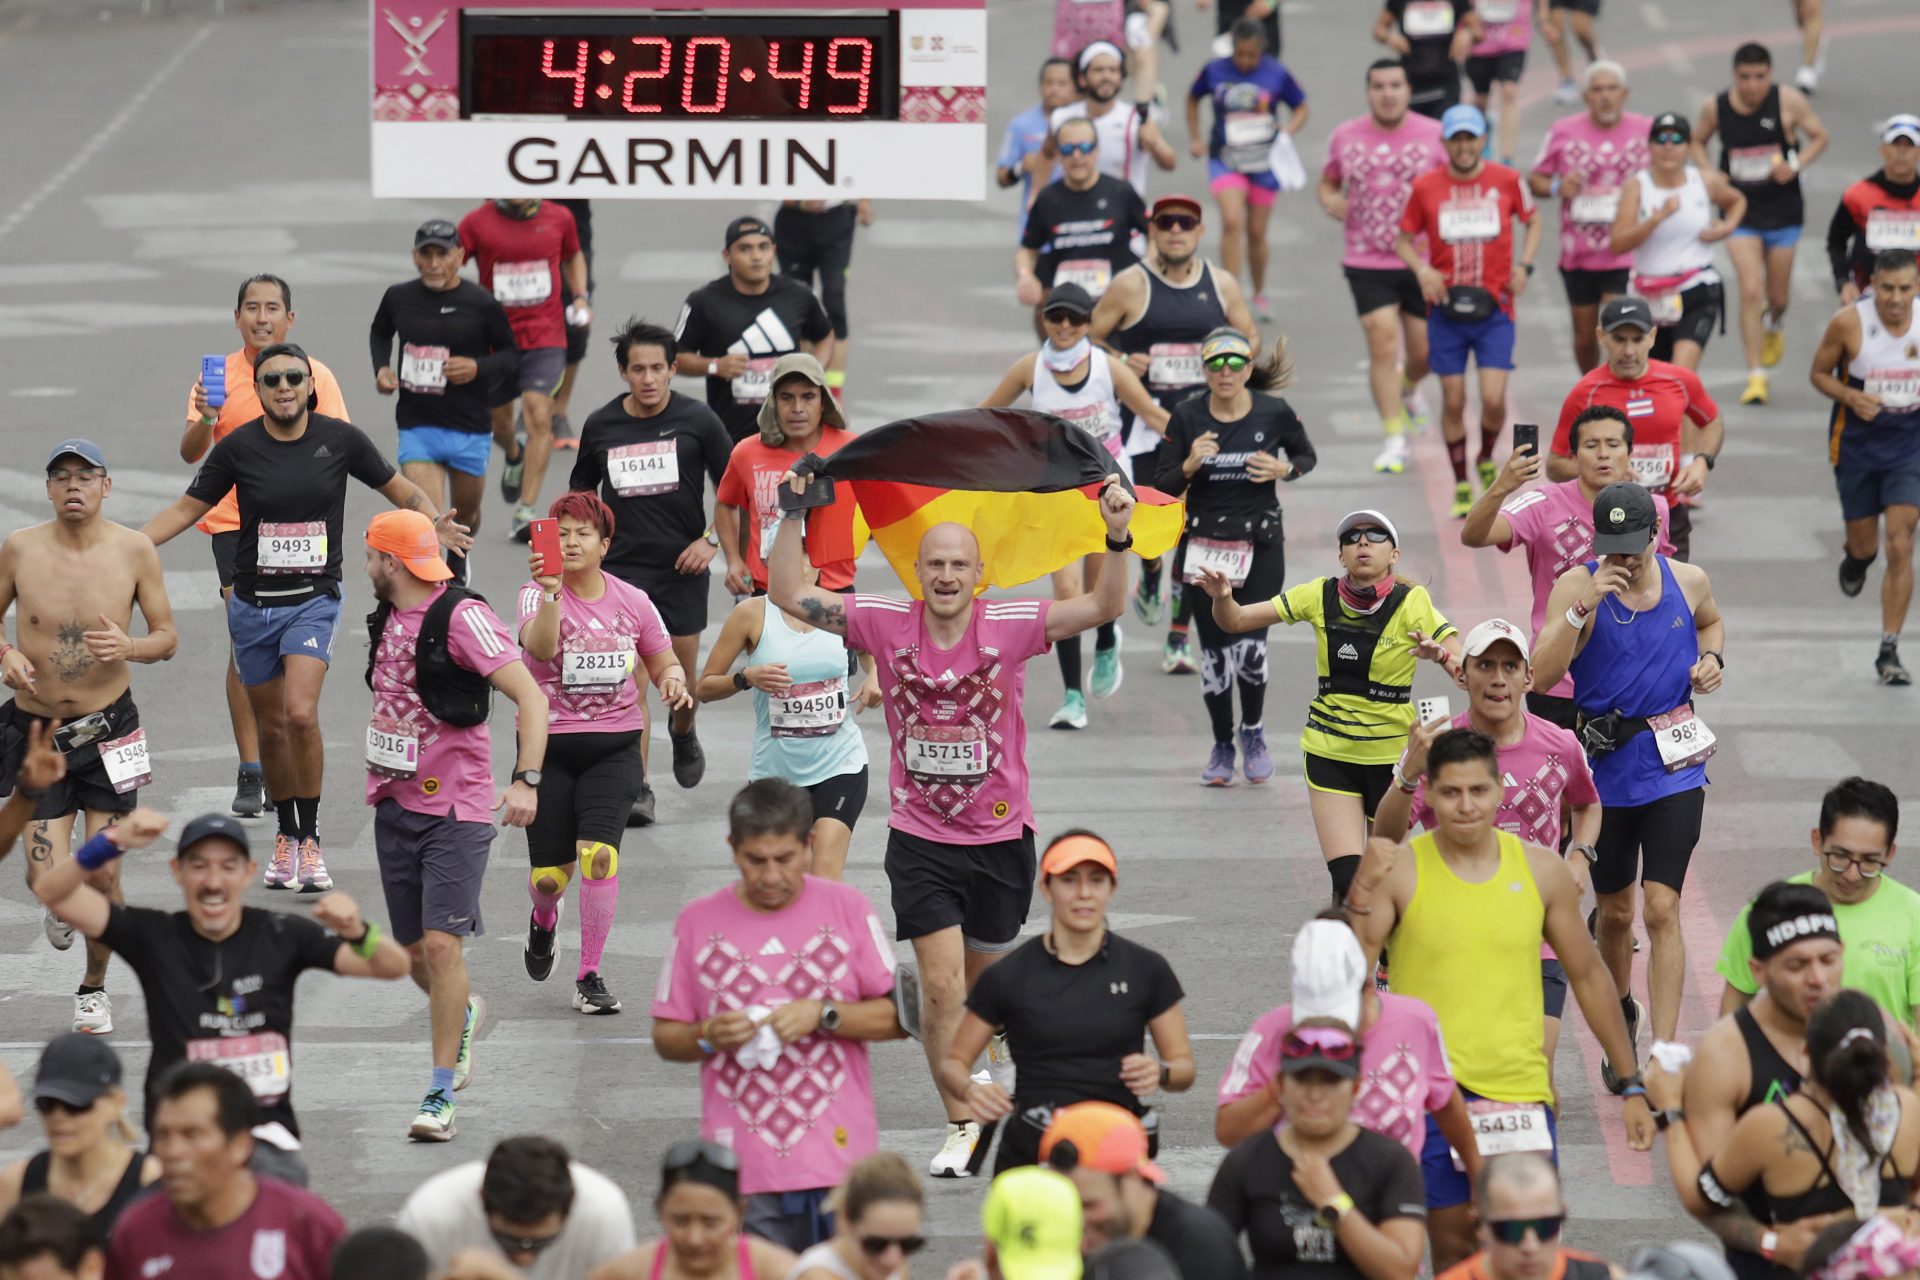 Der Marathon, bei dem 11.000 Teilnehmer betrogen haben